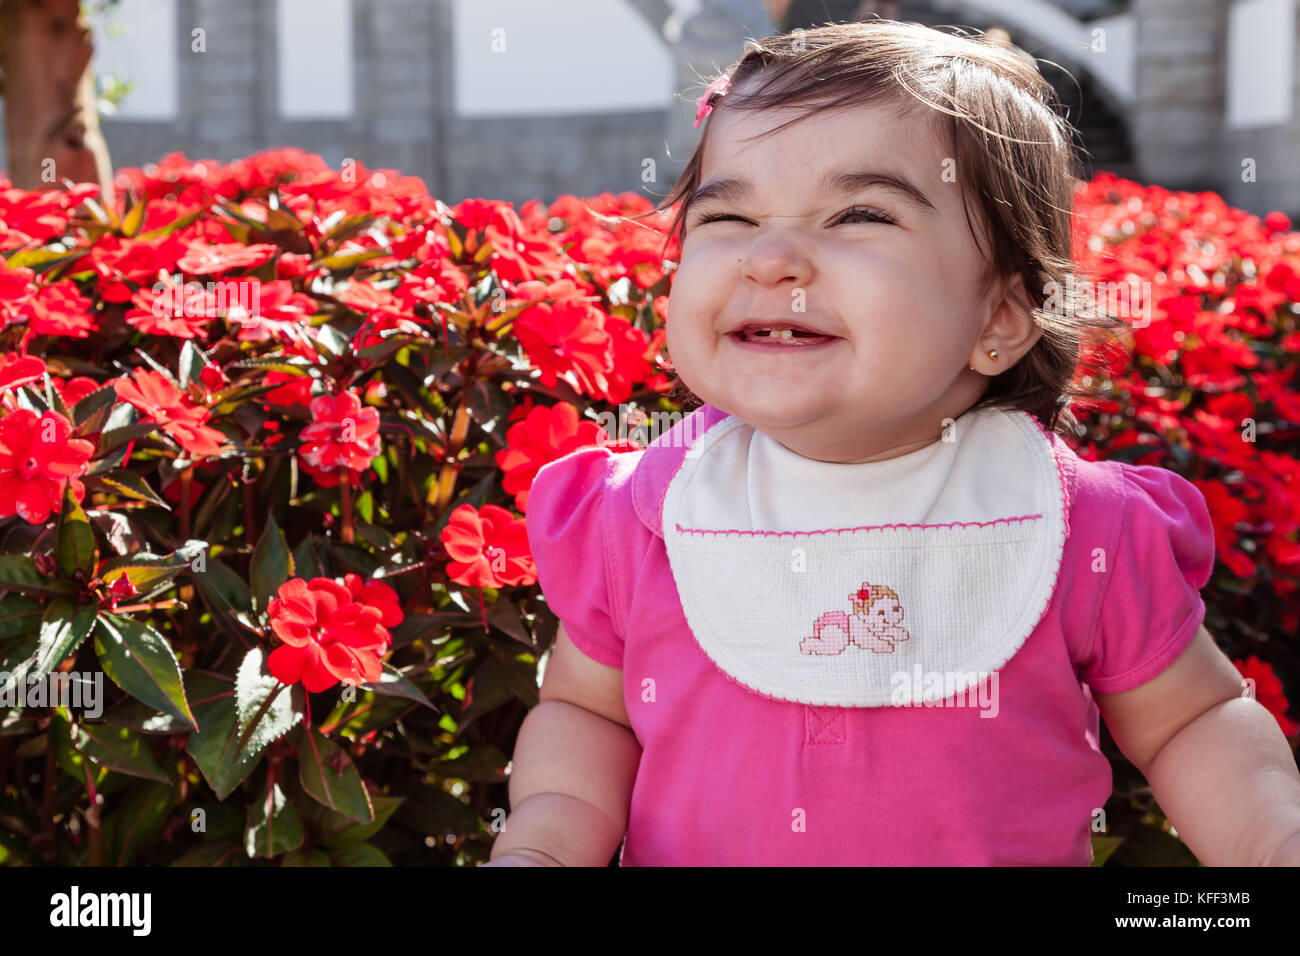 Mignon, souriant, heureux, joli bébé joufflu avec un grand sourire, rire et montrant deux dents dans un jardin de fleurs rouges. Quatorze mois / baby Banque D'Images